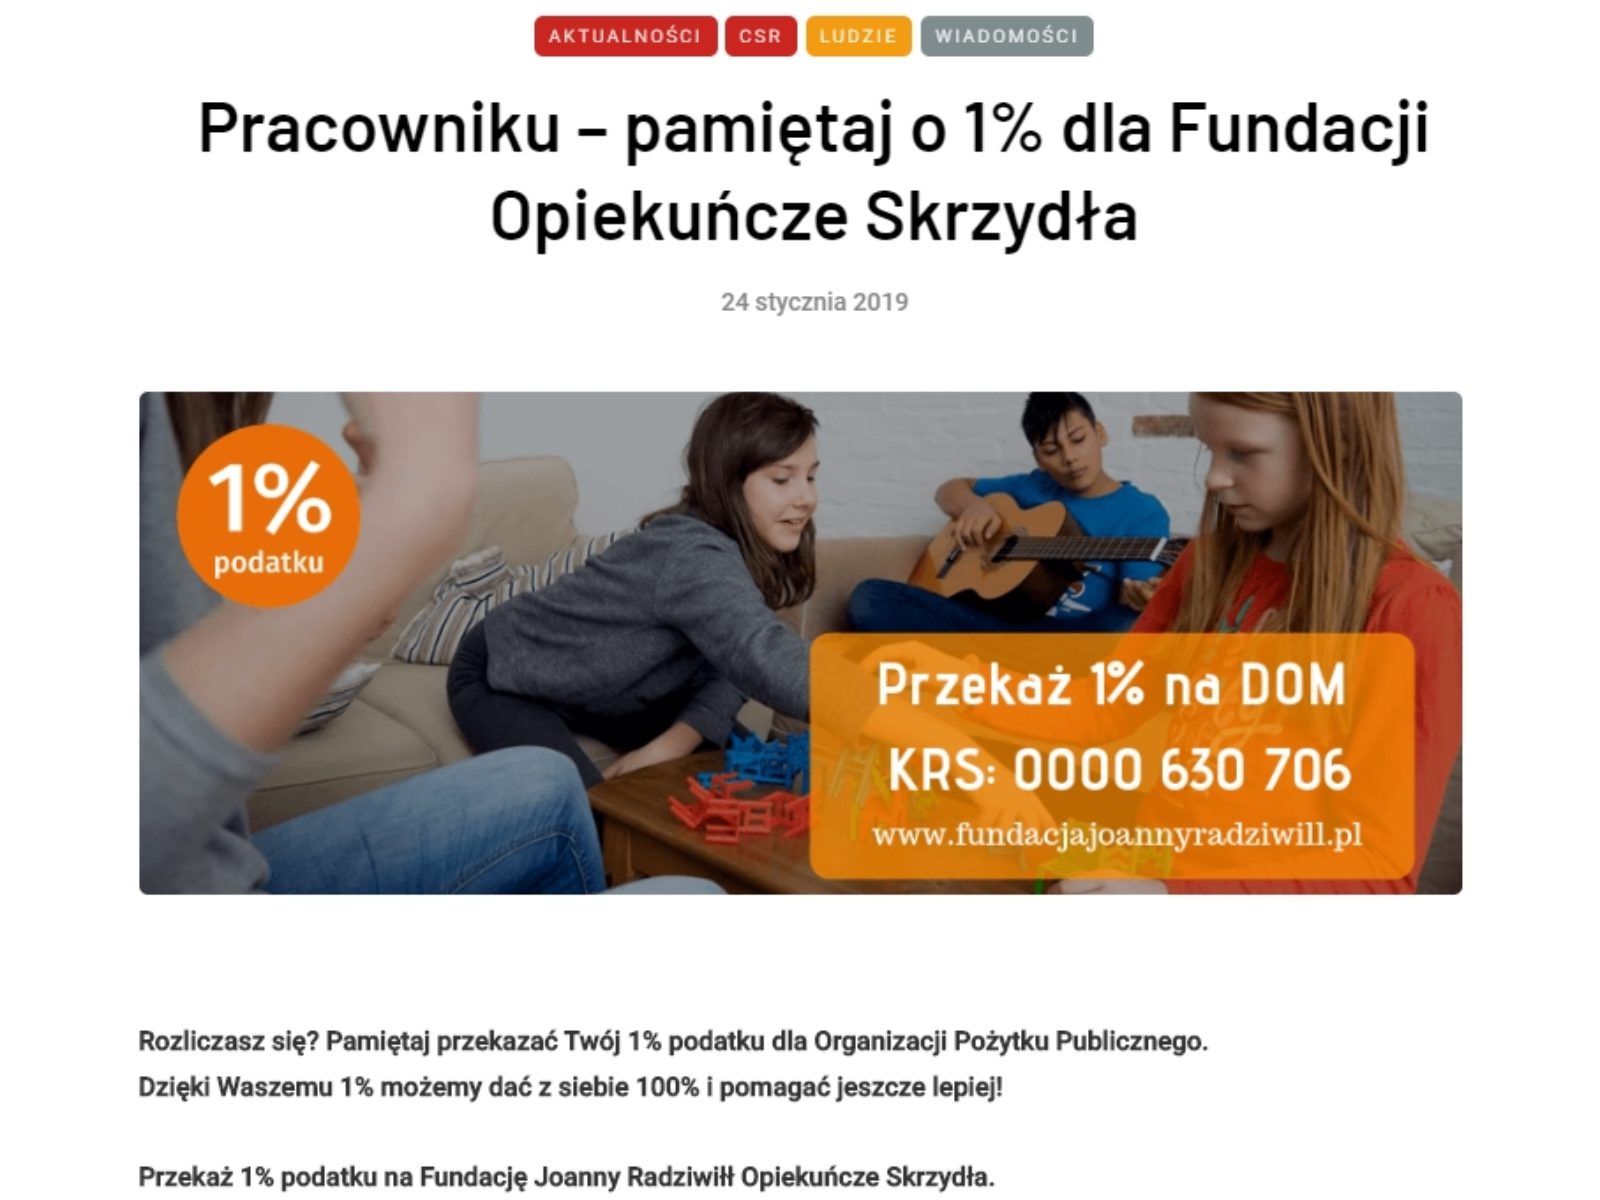 Manager24.pl: 1% na Dom Opiekuńczych Skrzydeł.